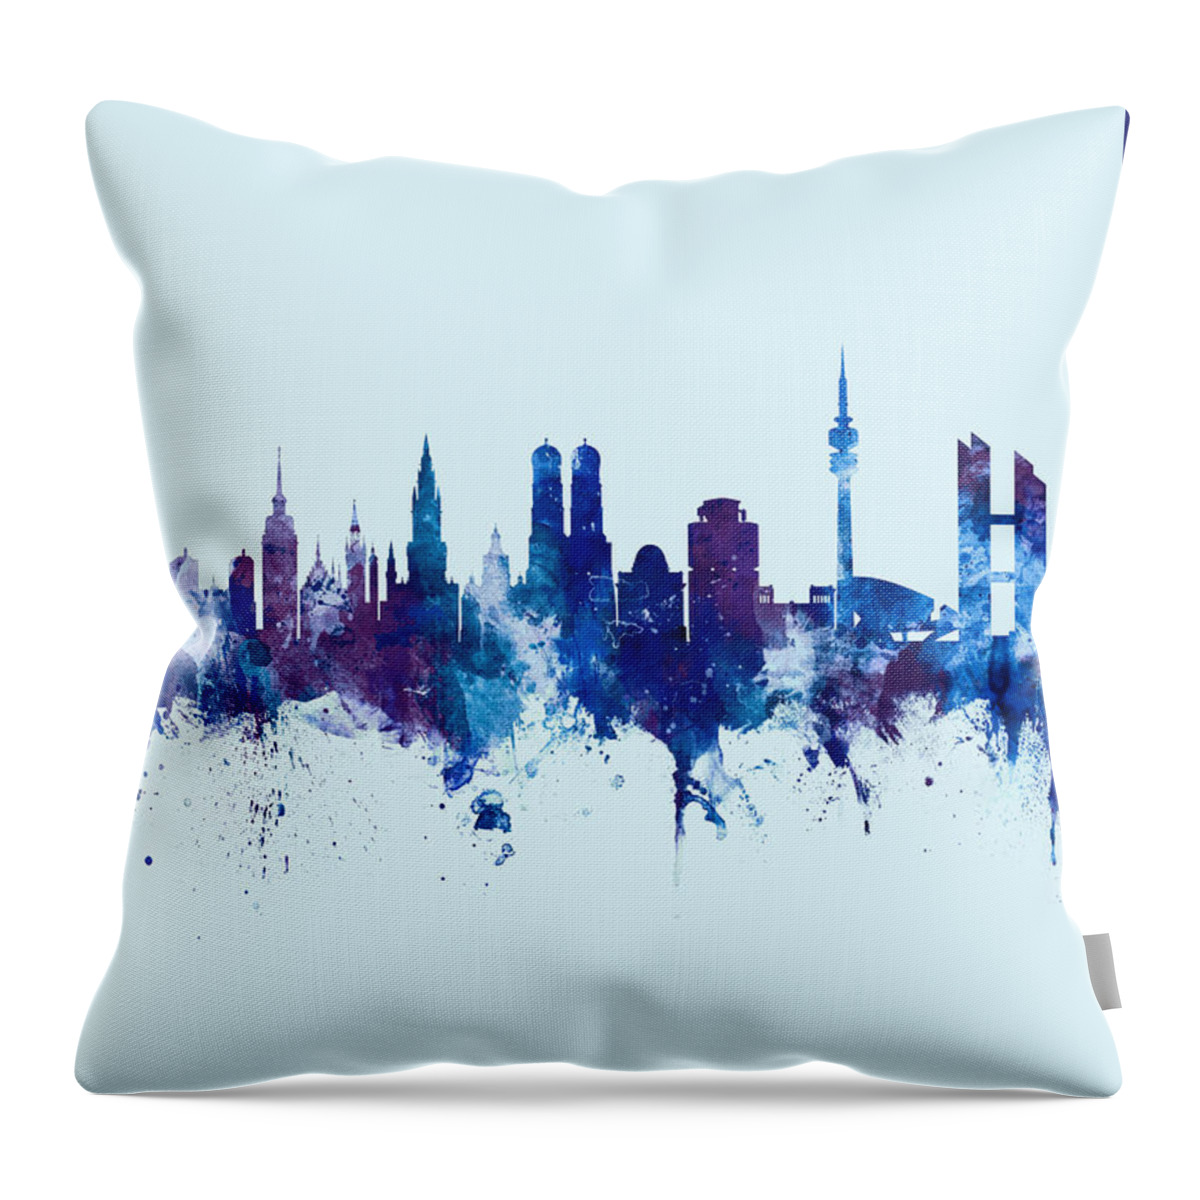 Munich Throw Pillow featuring the digital art Munich Germany Skyline #29 by Michael Tompsett